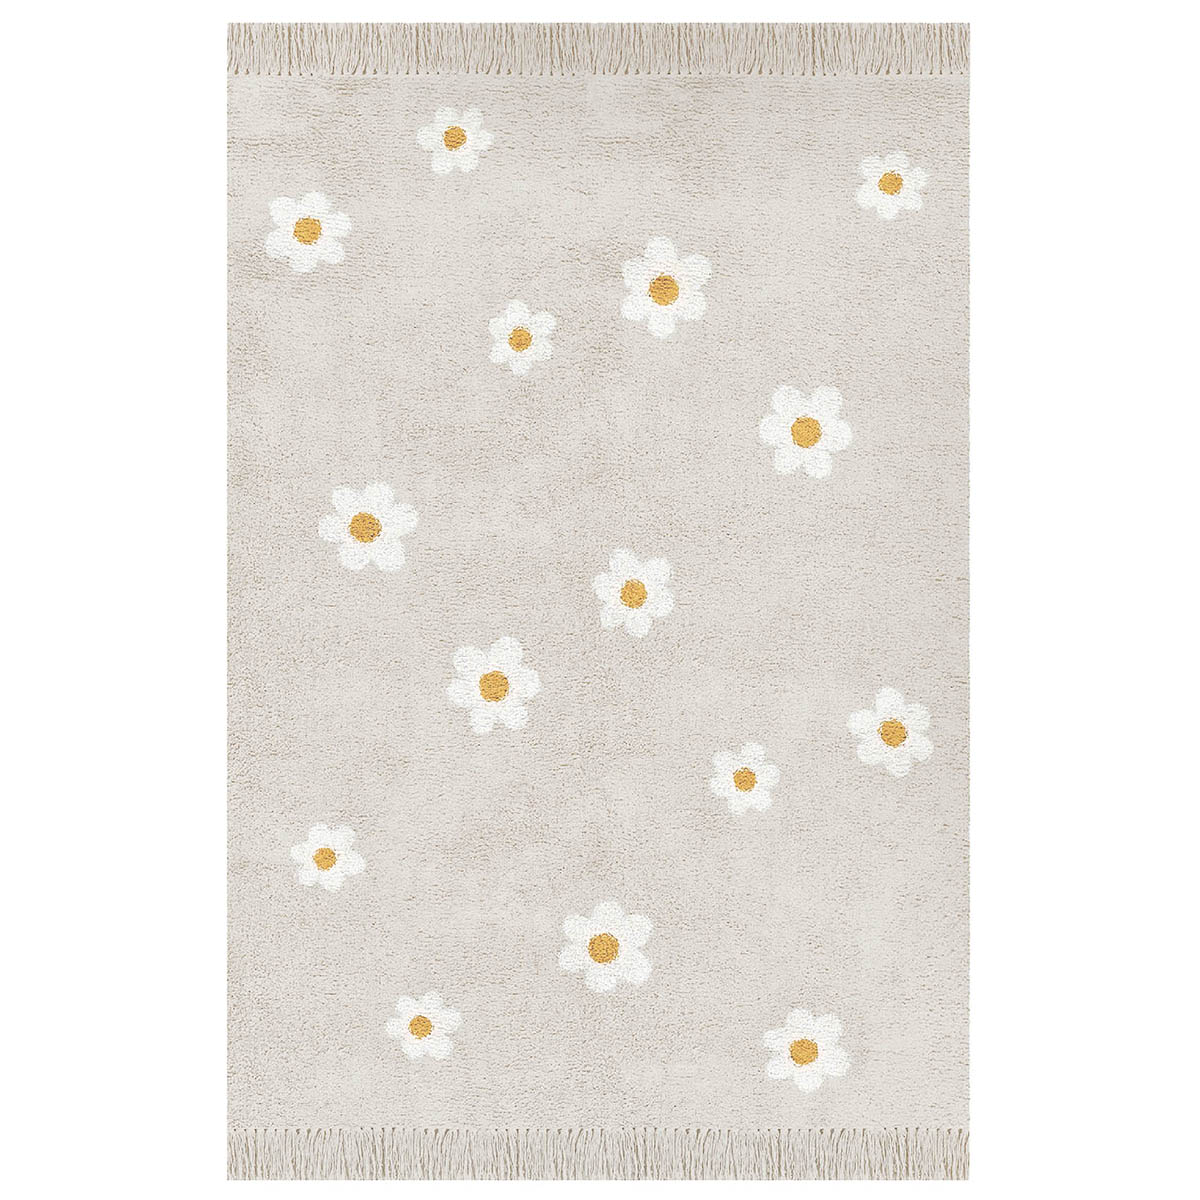 Dinki Balloon Kinderteppich 'Blumen' beige waschbar 120x170cm online kaufen